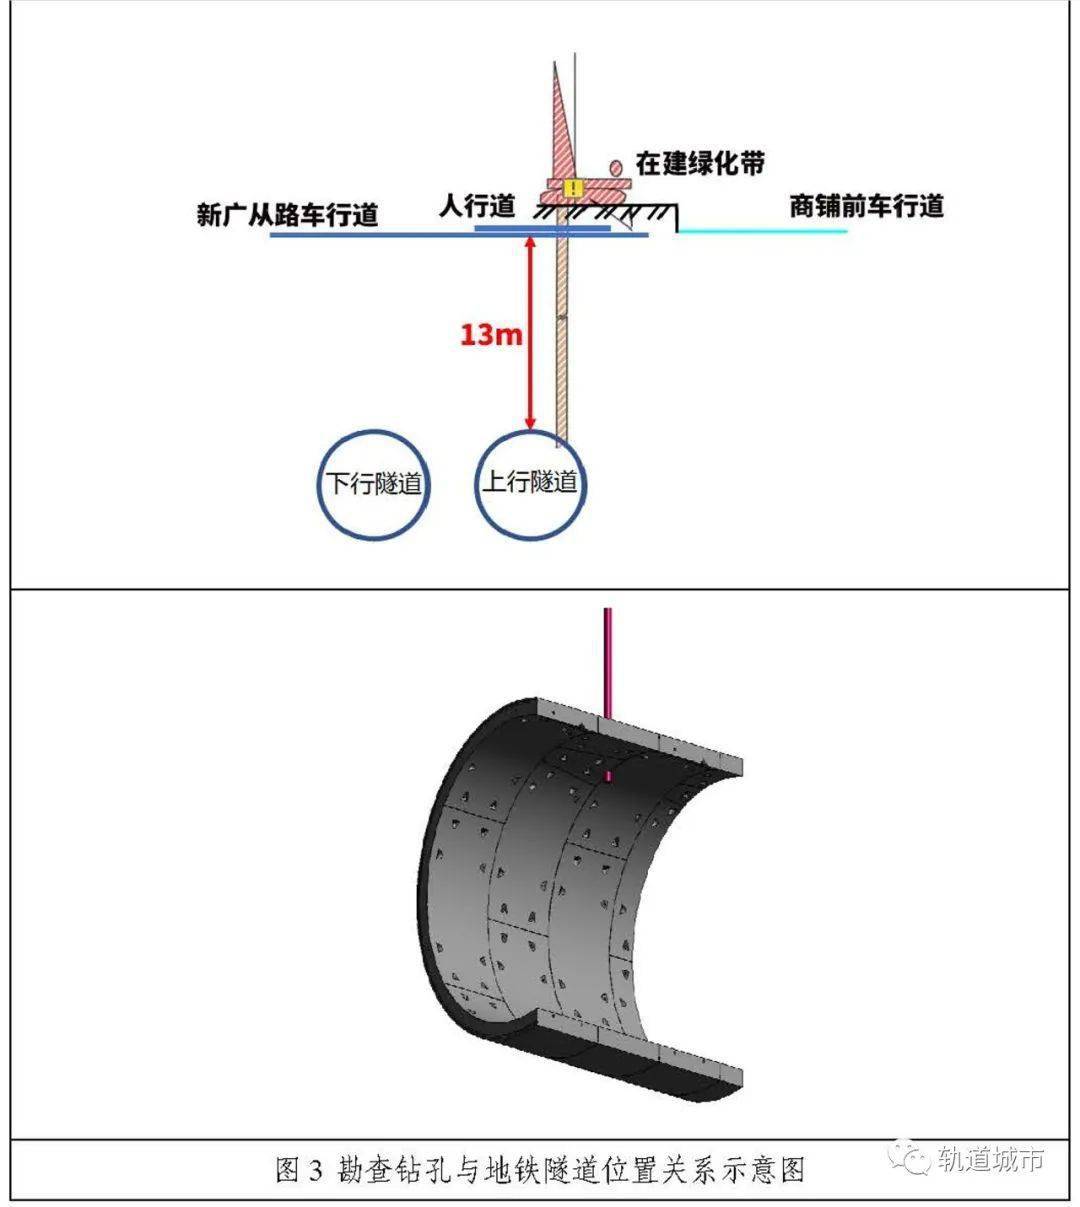 又一起地铁隧道被钻穿广州地铁14号线128隧道被勘探钻穿事故调查报告